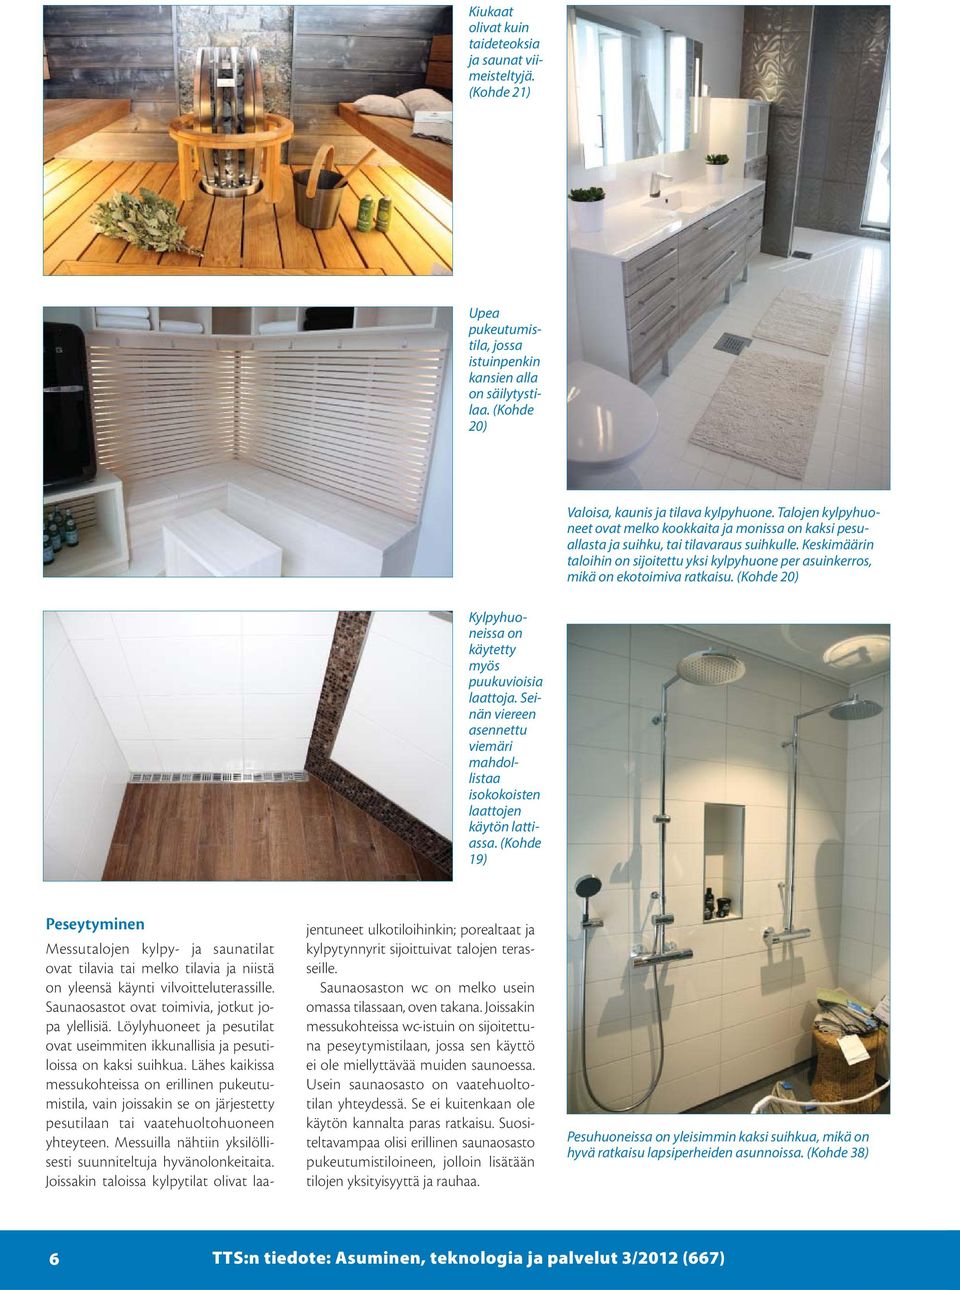 Keskimäärin taloihin on sijoitettu yksi kylpyhuone per asuinkerros, mikä on ekotoimiva ratkaisu. (Kohde 20) Kylpyhuoneissa on käytetty myös puukuvioisia laattoja.